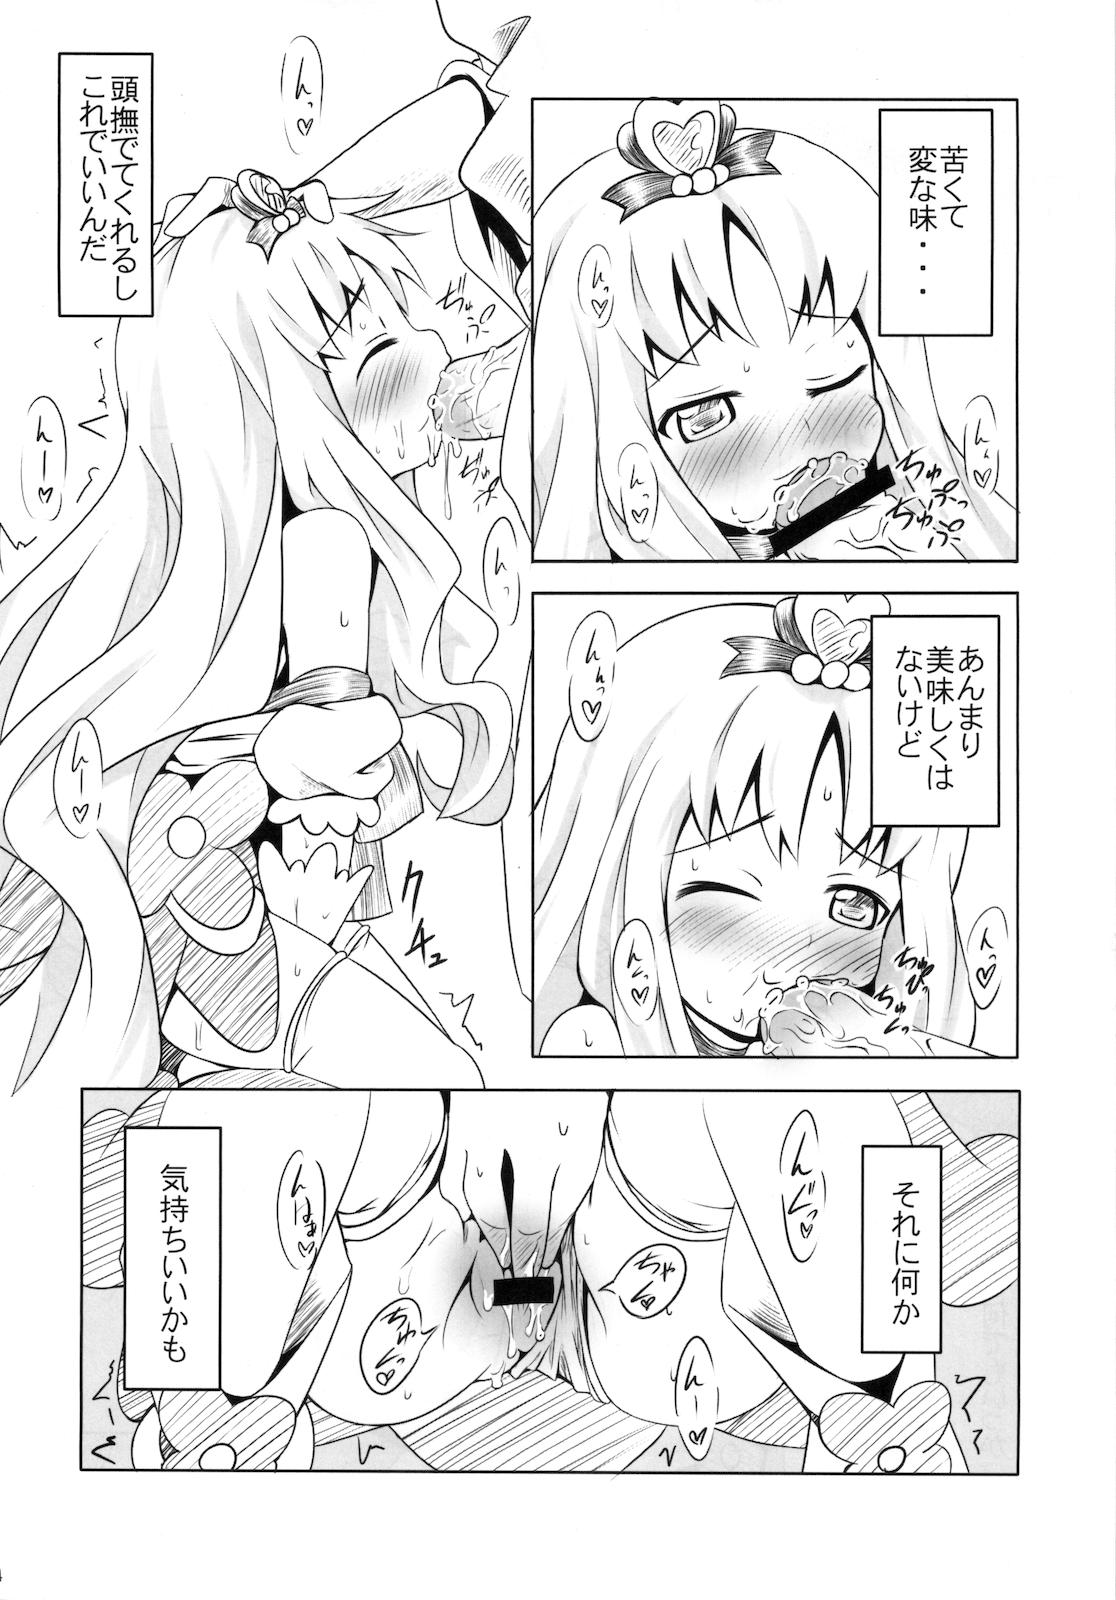 Madura Pre-mari - Heartcatch precure Anime - Page 13